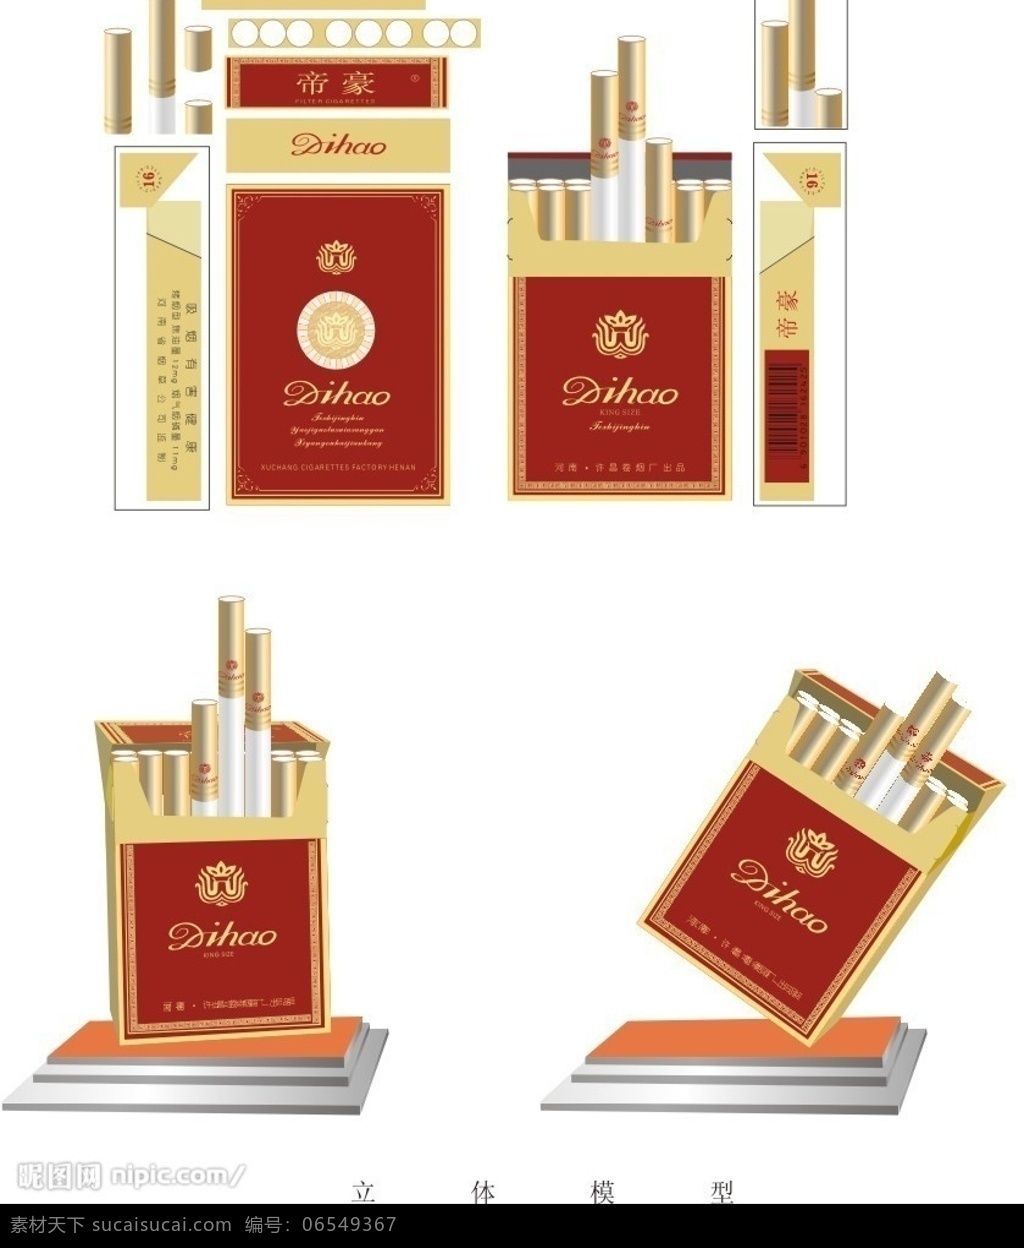 烟盒包装 包装设计 矢量图库